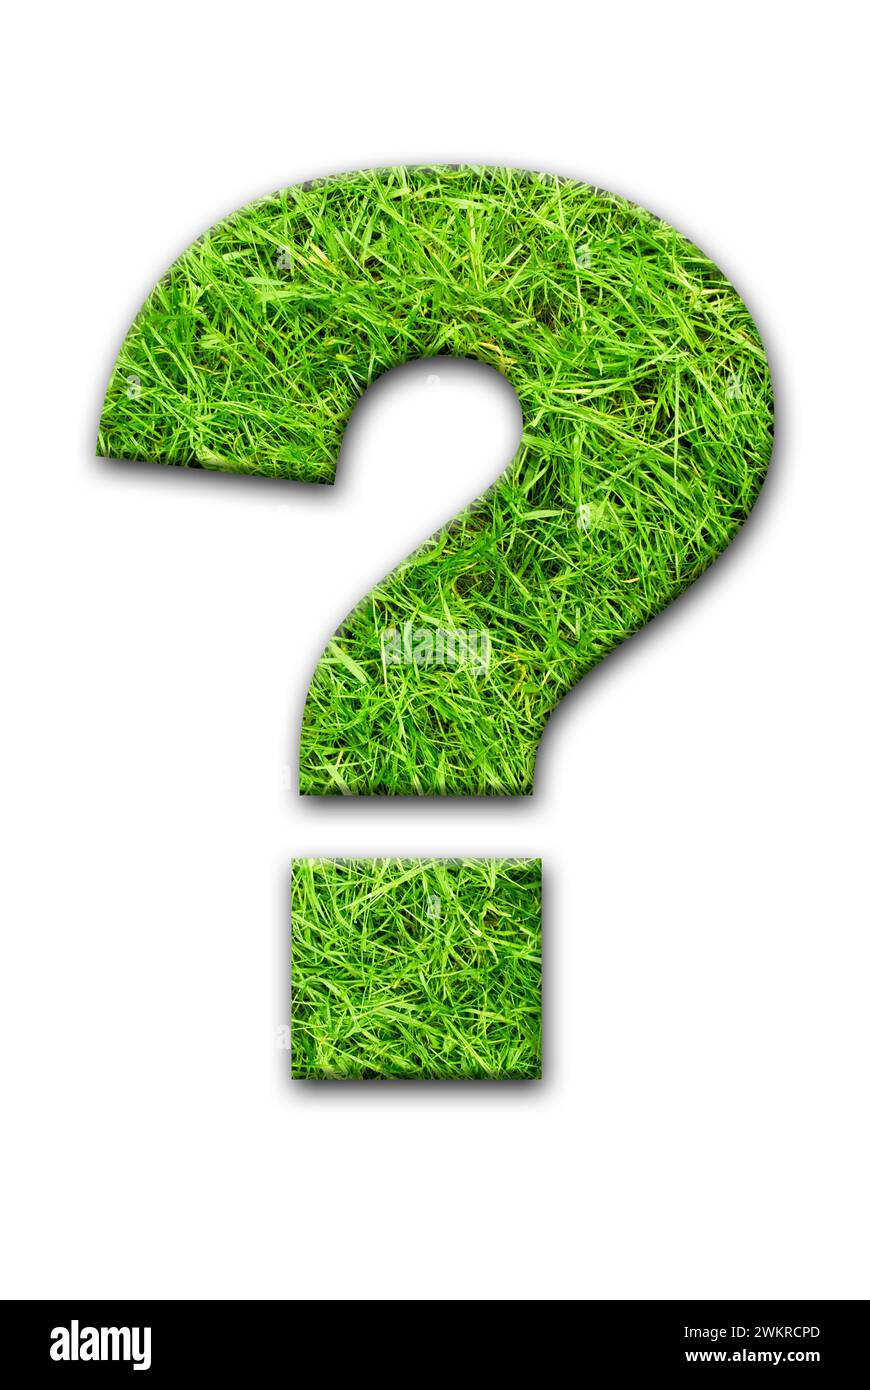 Fragezeichensymbol mit grünem Gras gefüllt Stockfoto